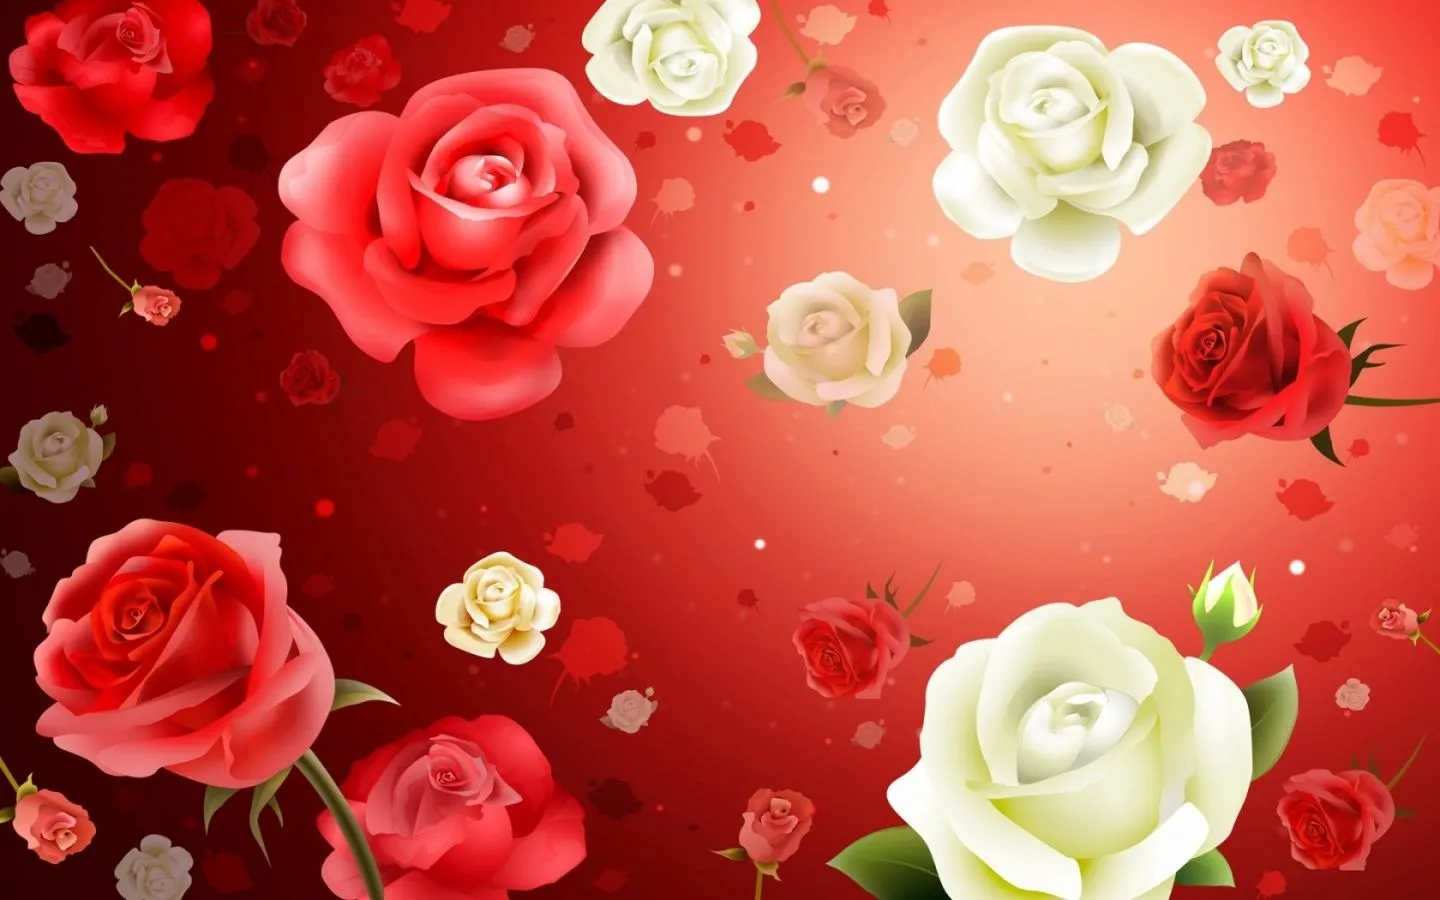 Fotos de flores rosas paisajes para fondos de pantalla - Imagui